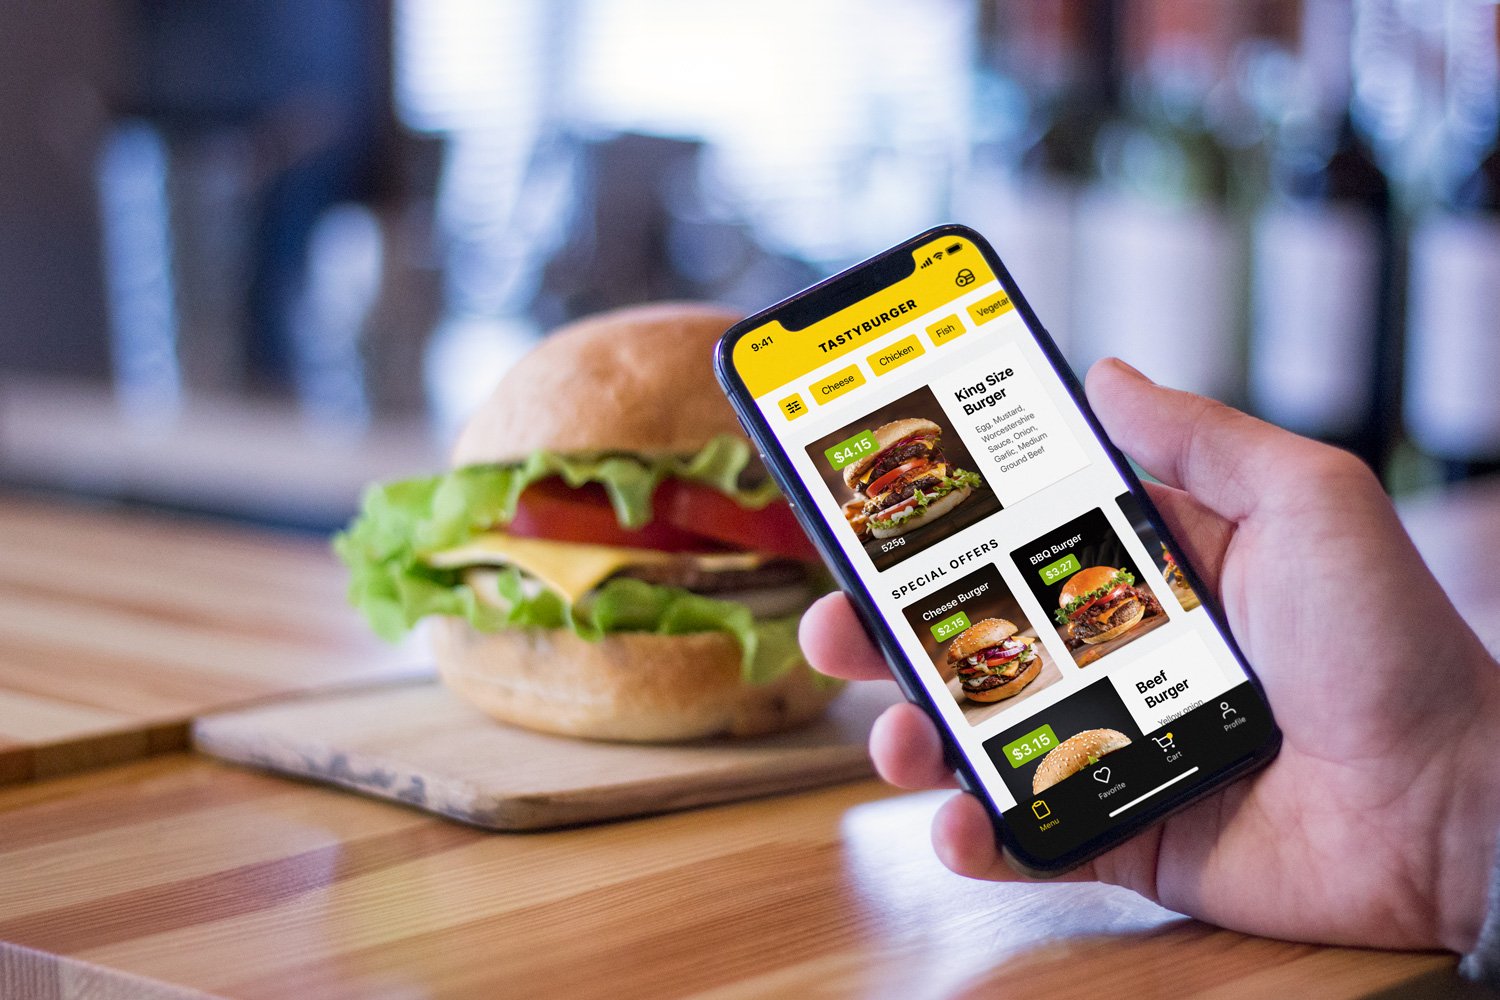 tasty burger app ui design-tubik-studio